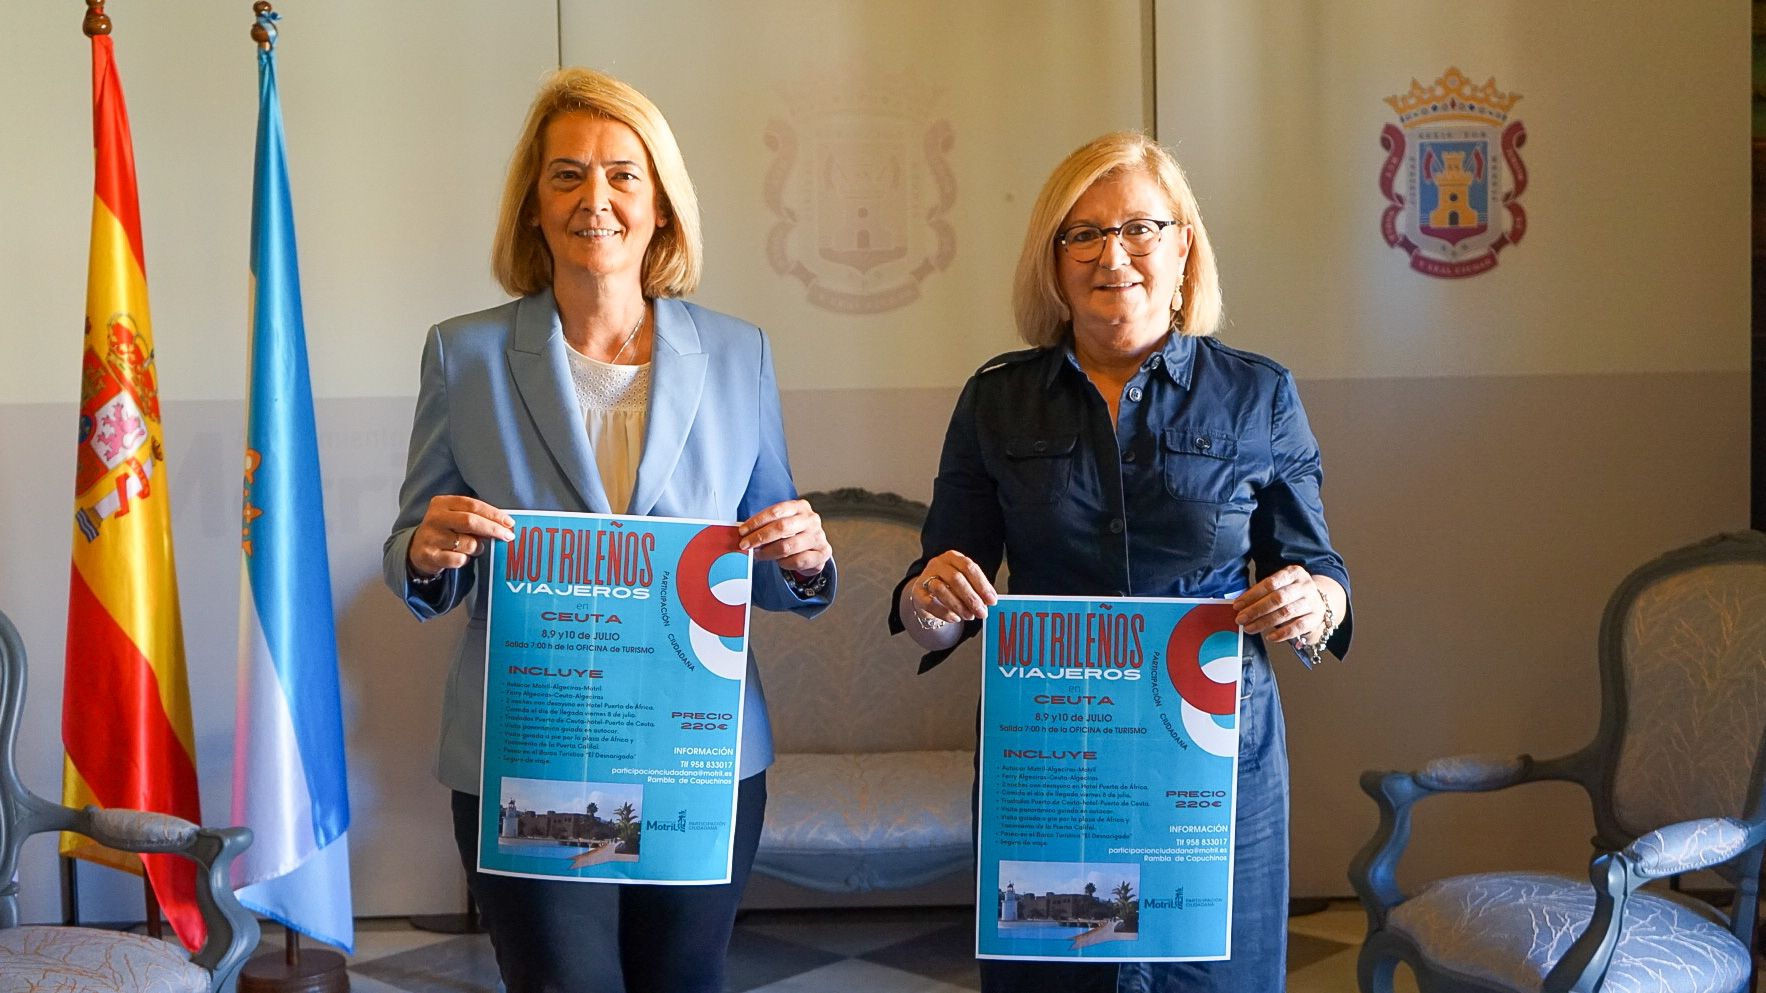 El programa ‘Motrileños viajeros’ visitará la ciudad de Ceuta